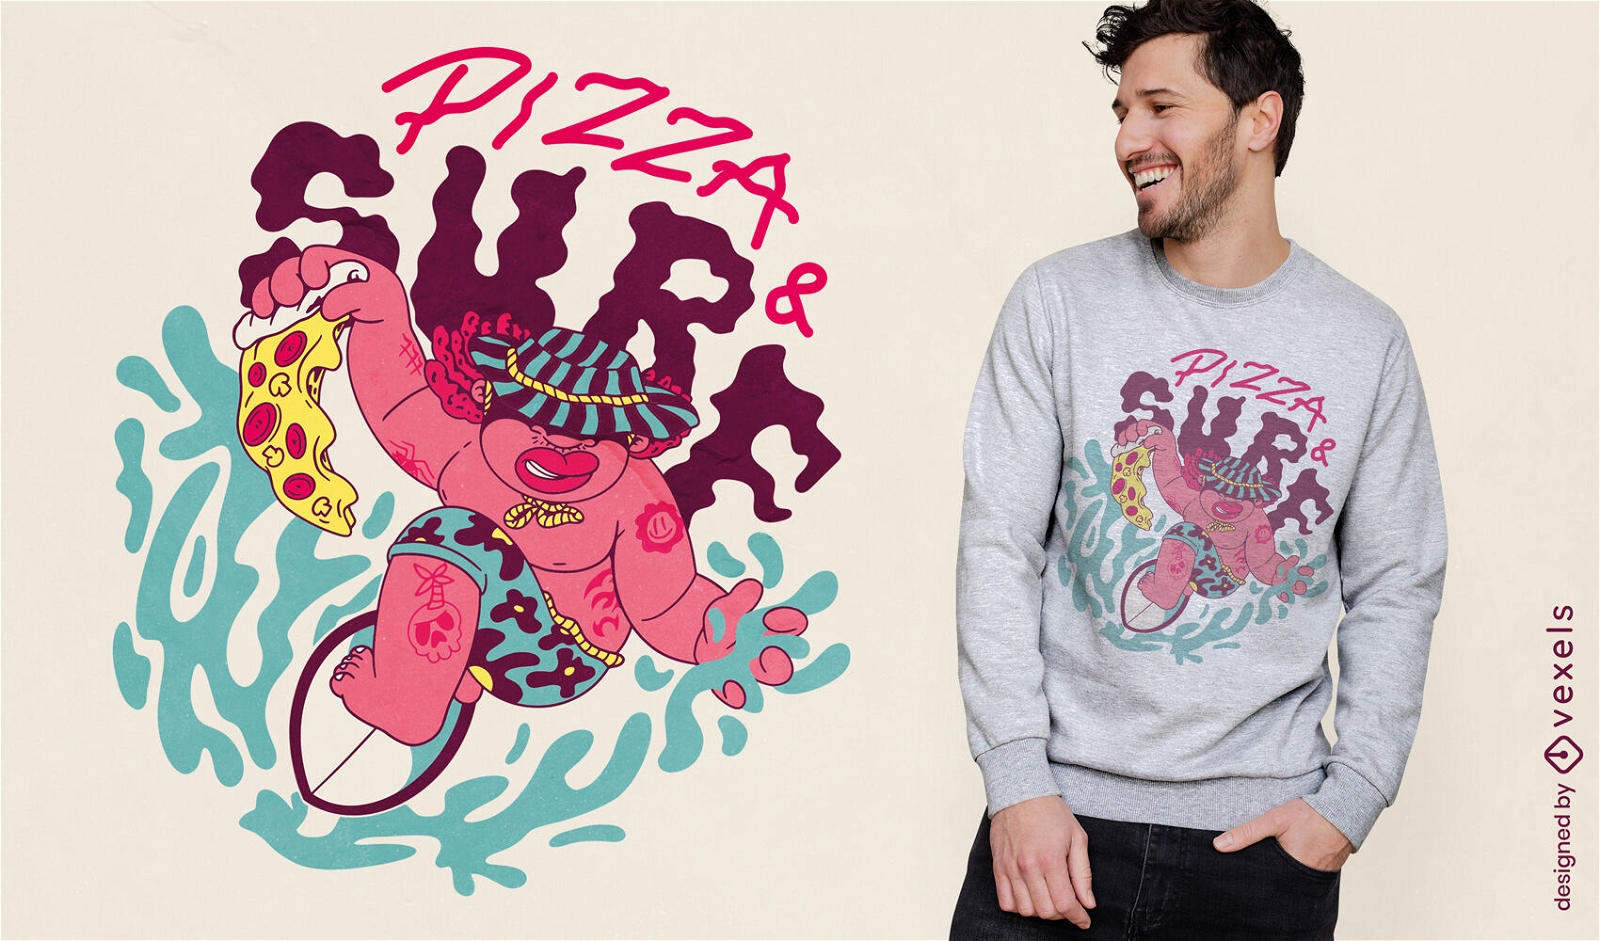 Hombre surfeando con dise?o de camiseta de pizza.